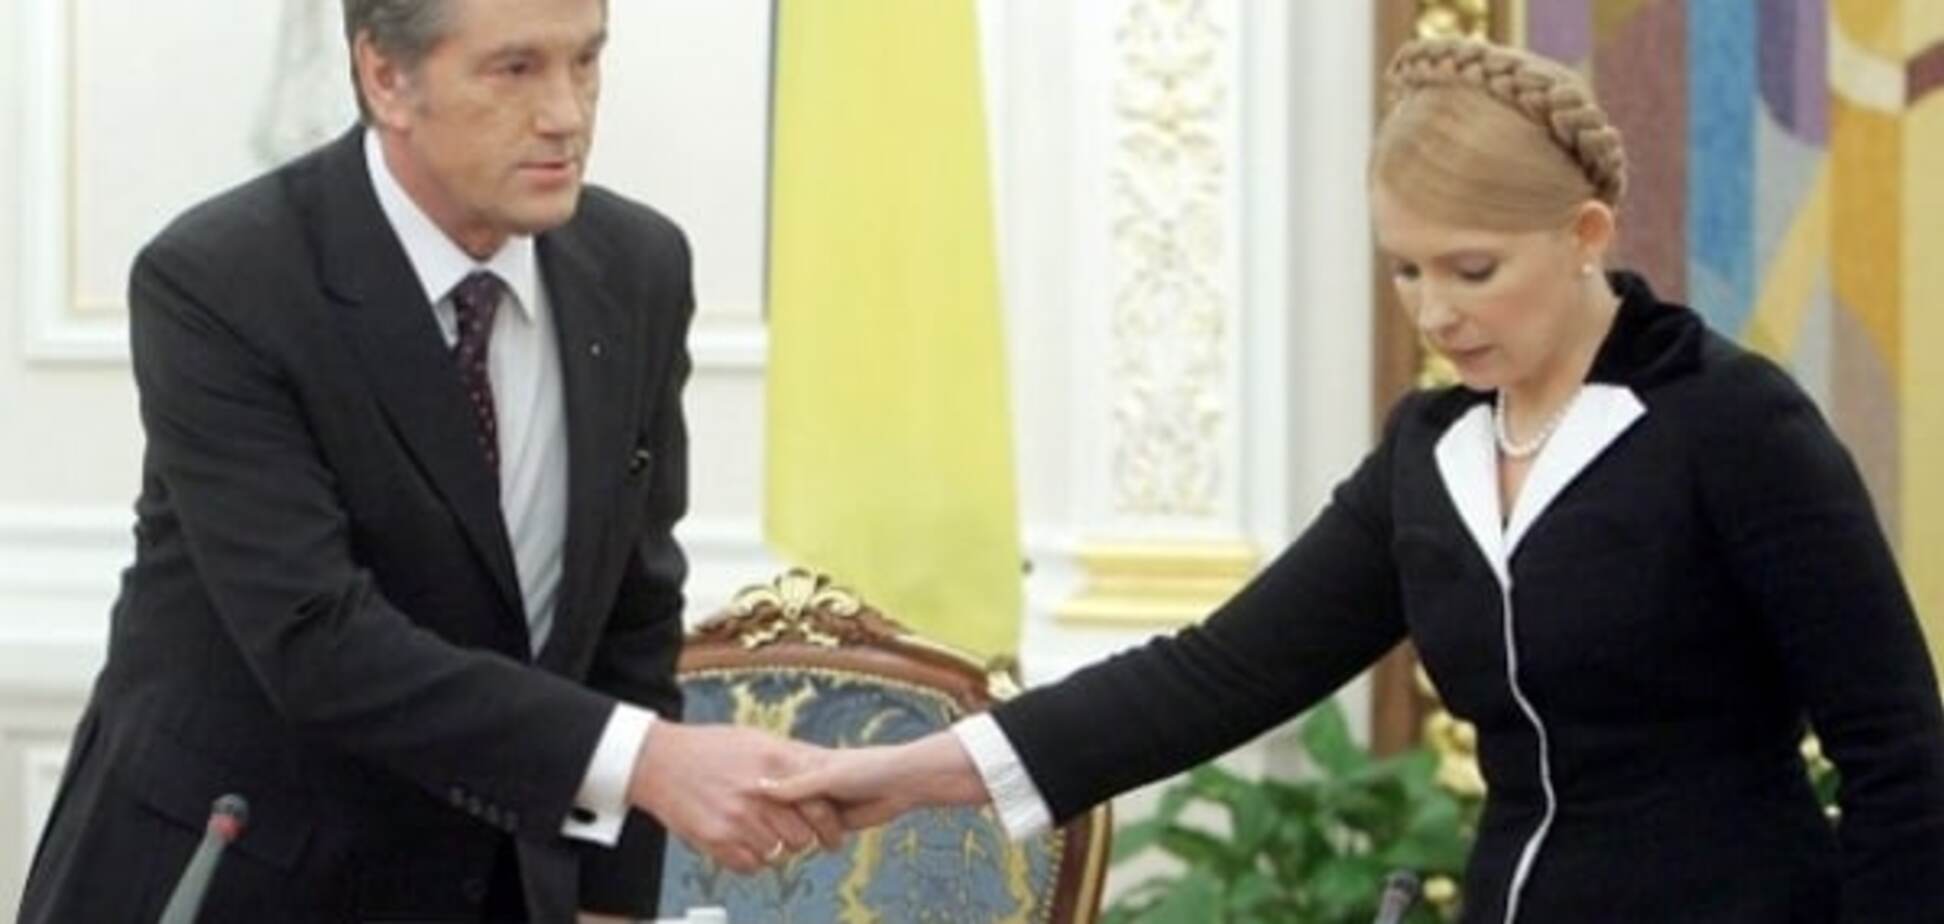 Страну сливают: Тарута рассказал, как 'газовая принцесса' Тимошенко пошла по стопам Ющенко